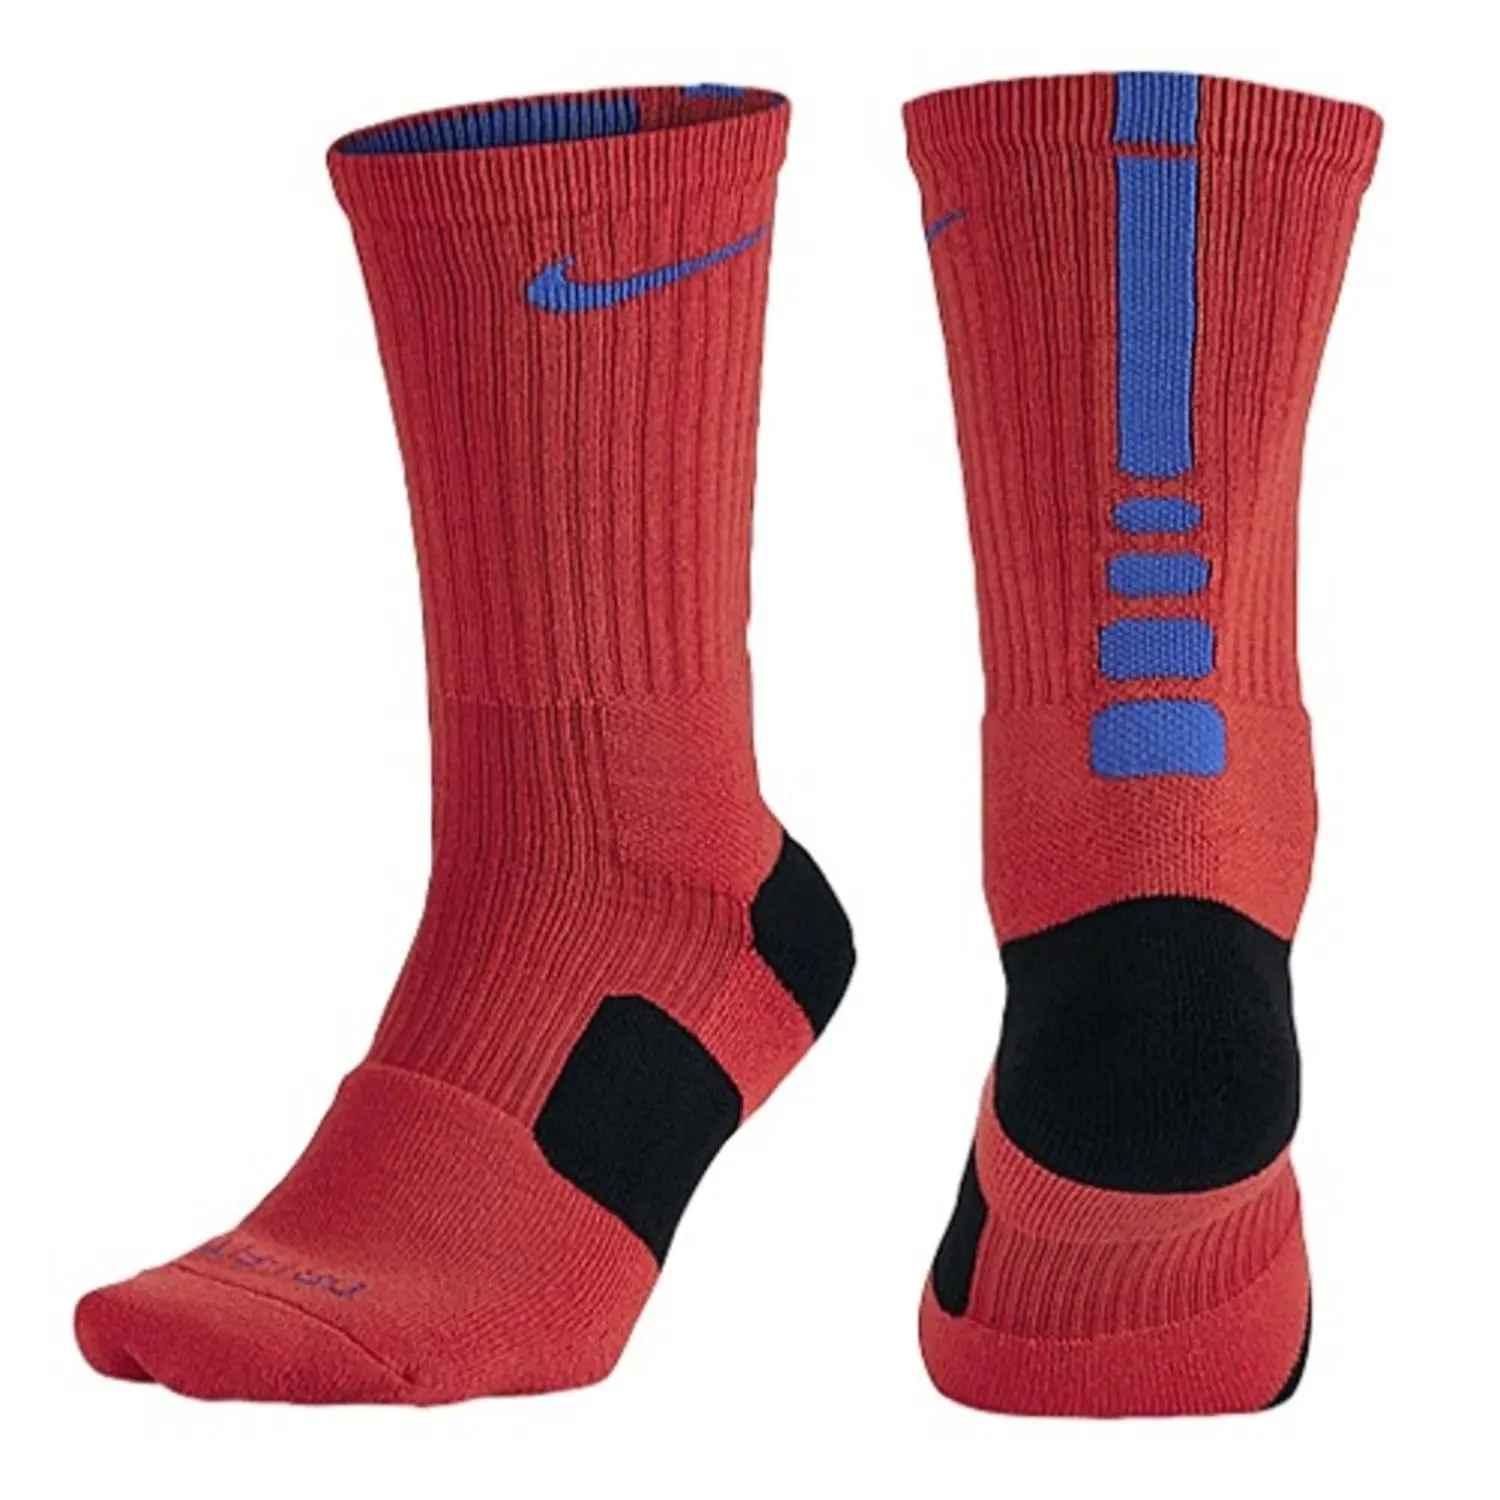 all red nike socks